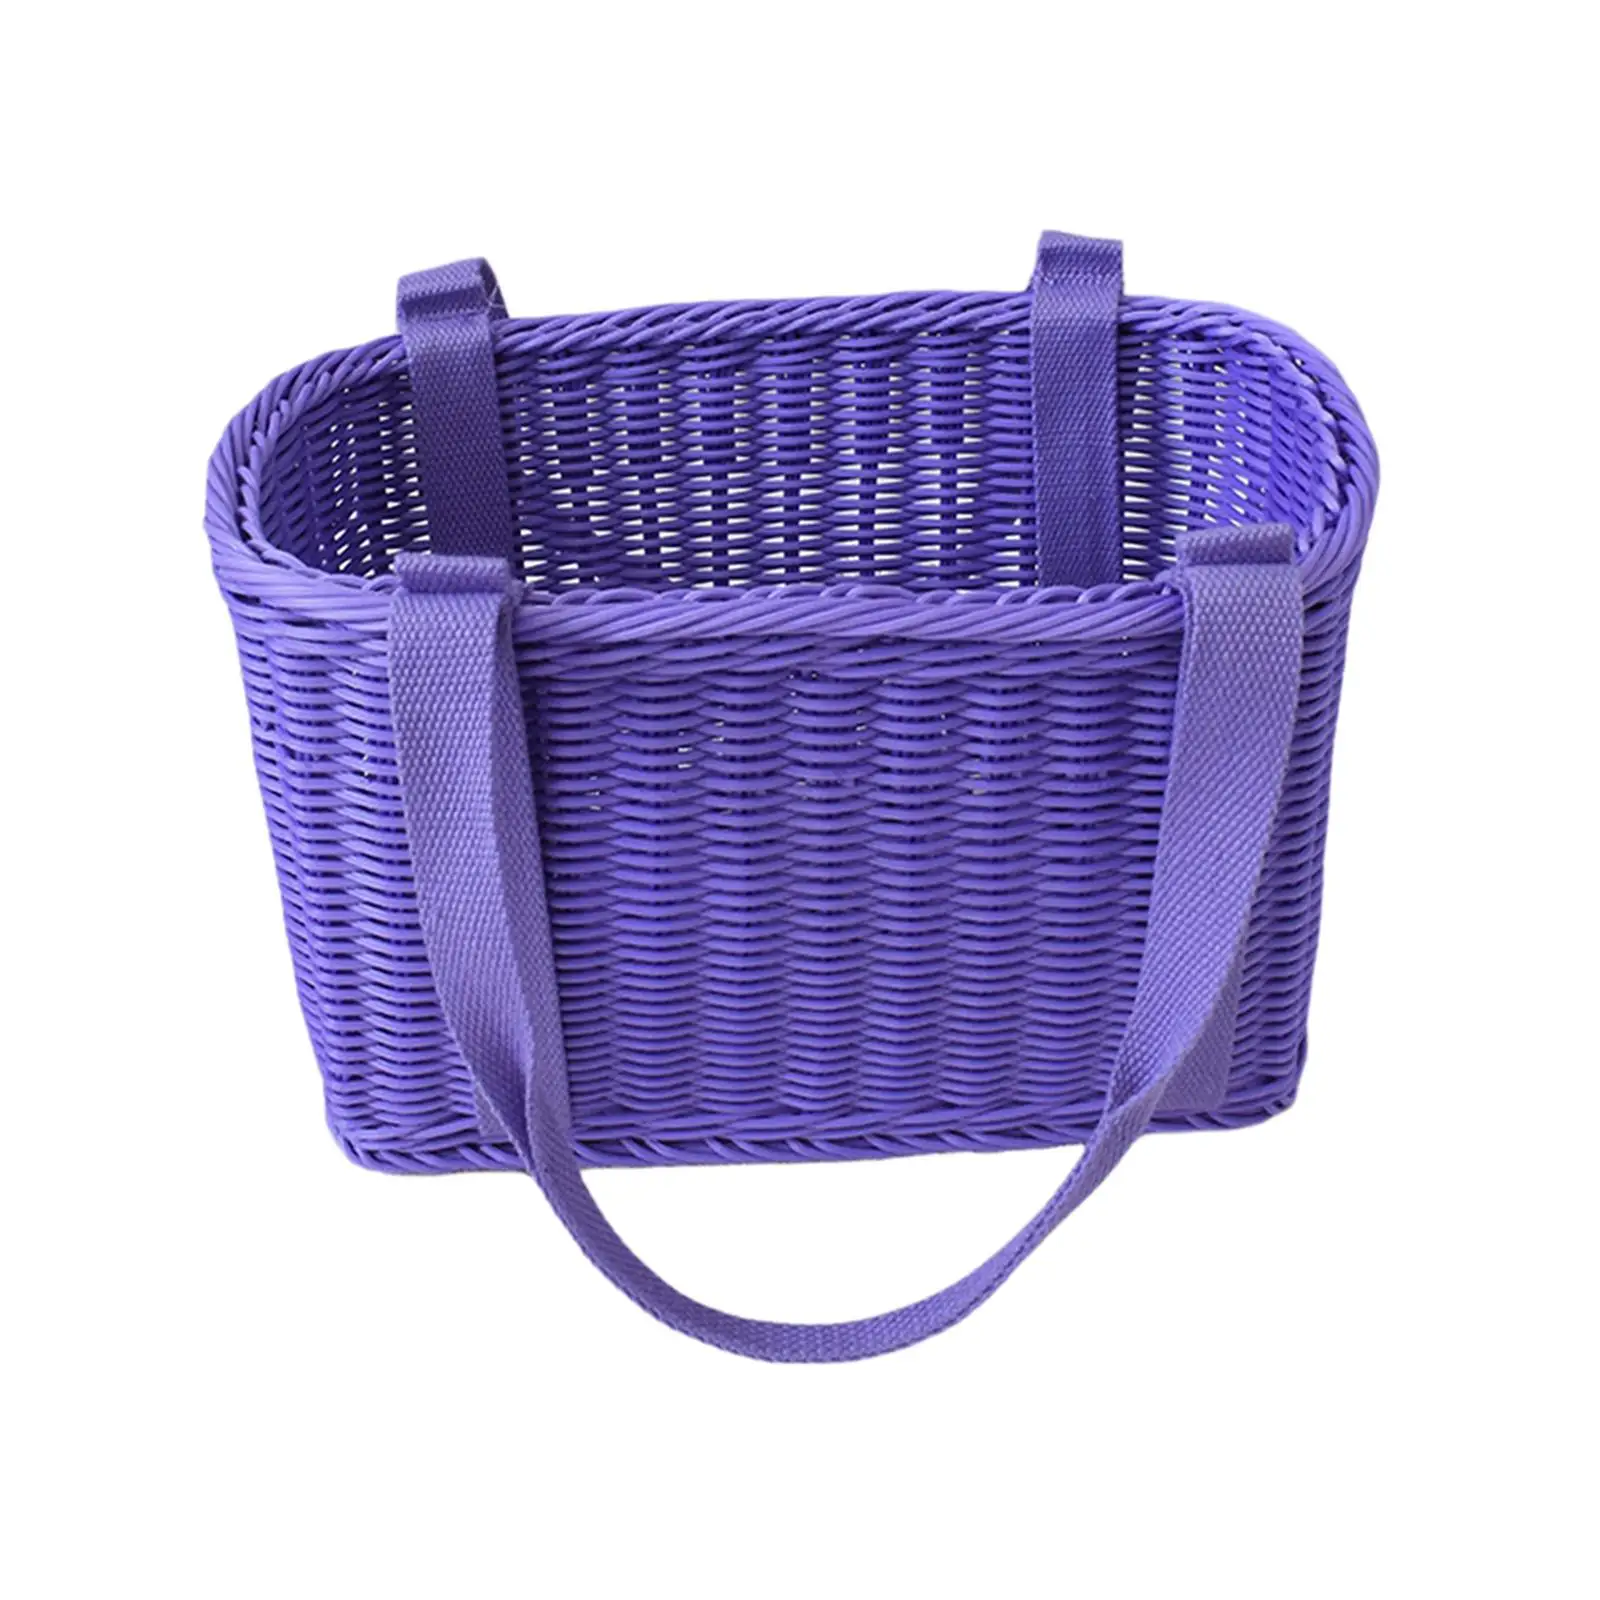 Hand Woven Basket Vegetable Storage Basket Fruits Storage Baskets Organizer for Picnic Camping Bedroom Bathroom